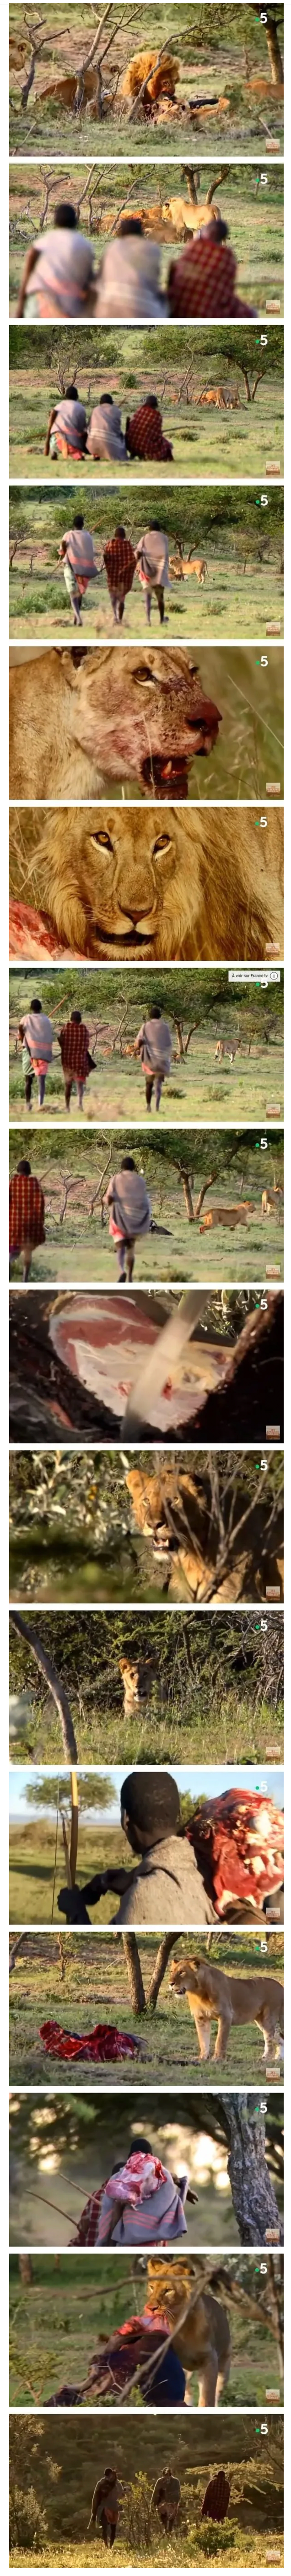 アフリカで肉を得る簡単な方法